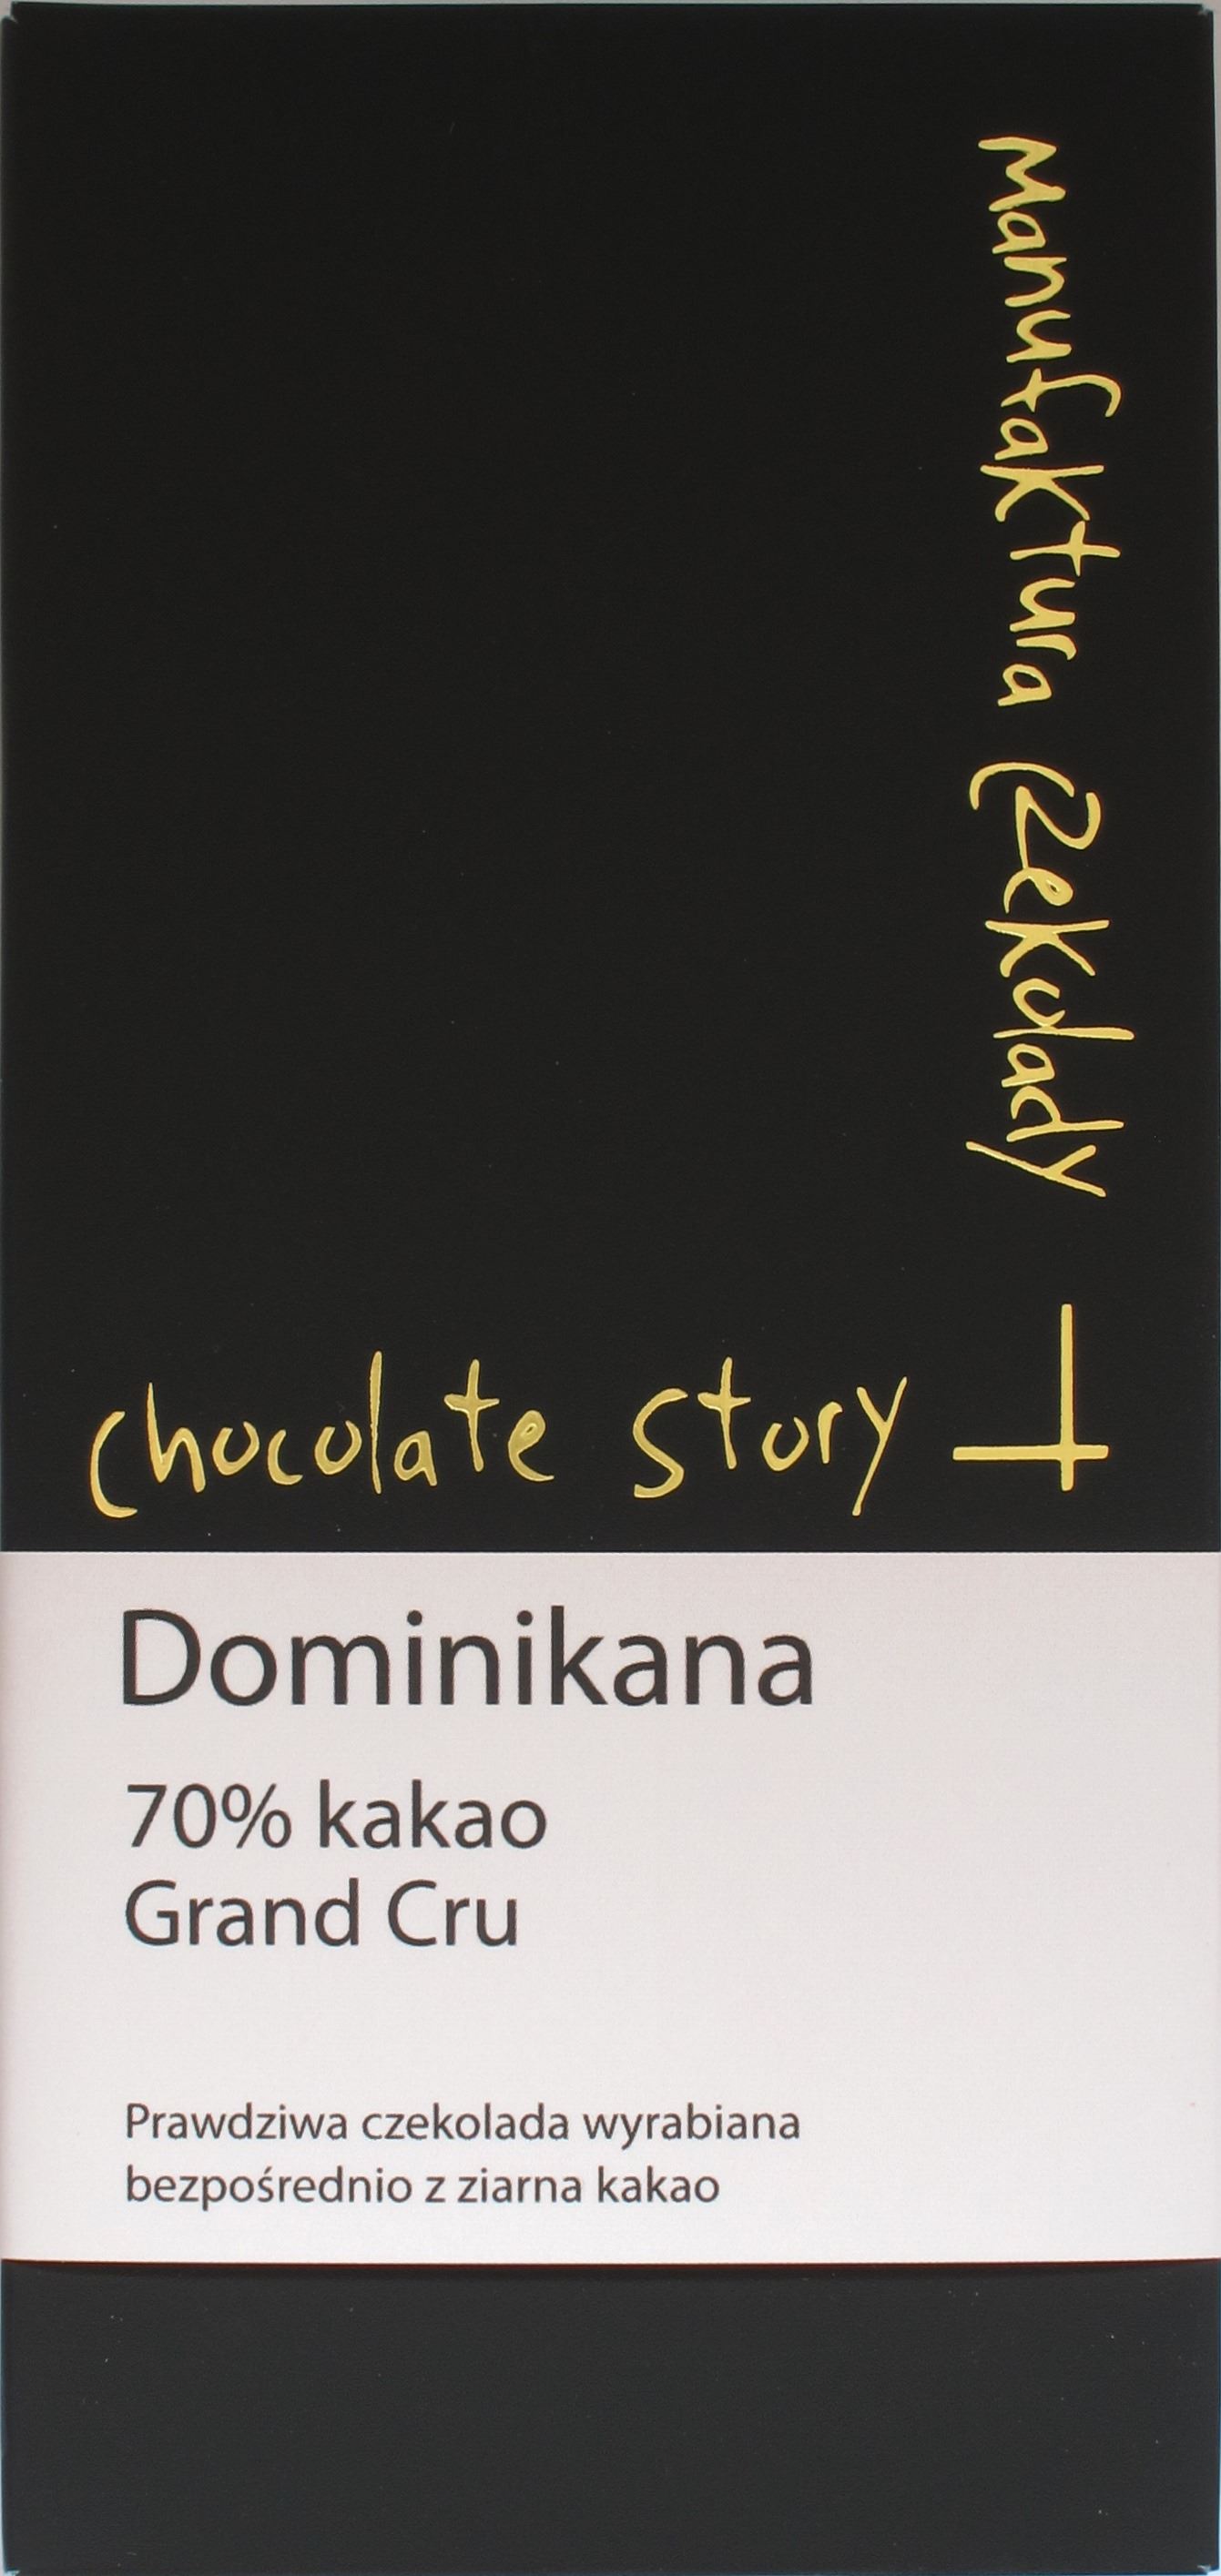 Vorderseite "Chocolate Story" aus der Dominikanischen Republik